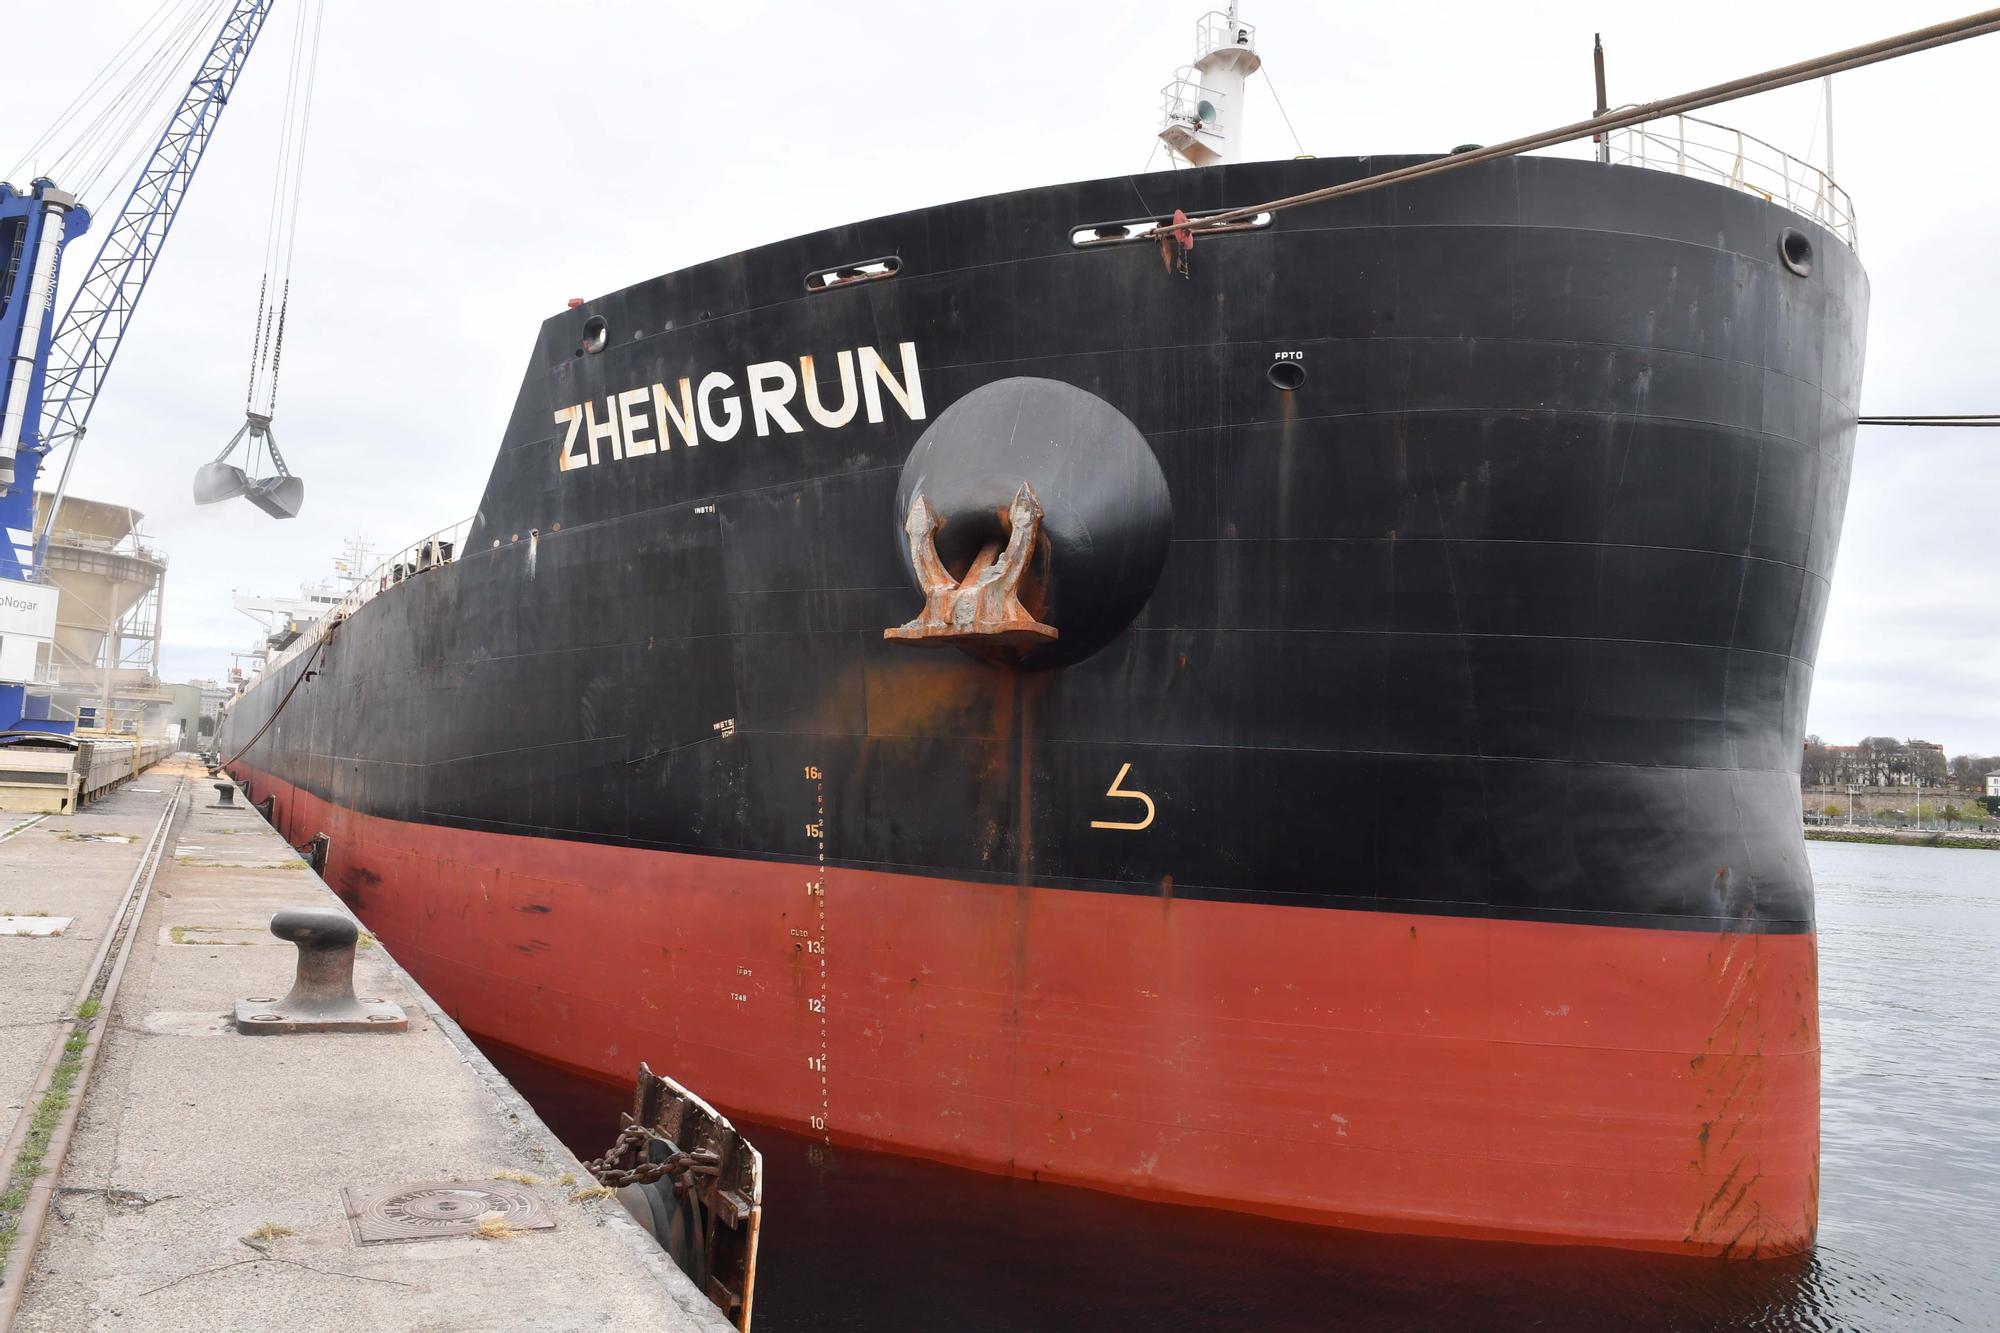 El buque Zheng Run, atracado en A Coruña